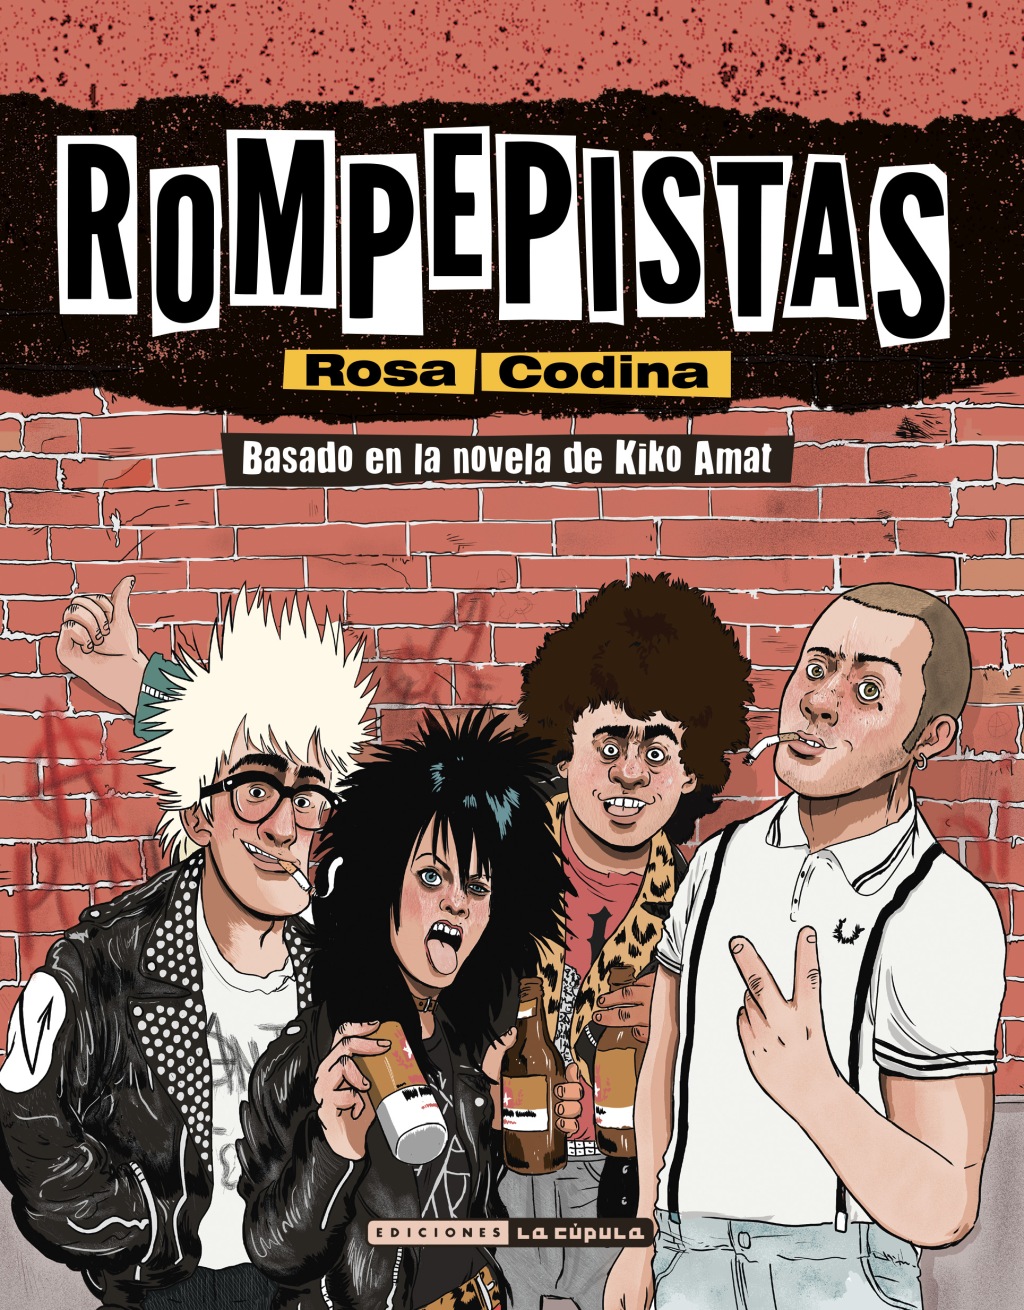 Rompepistas, la novela de Kiko Amata en su versión cómic por Rosa Codina.